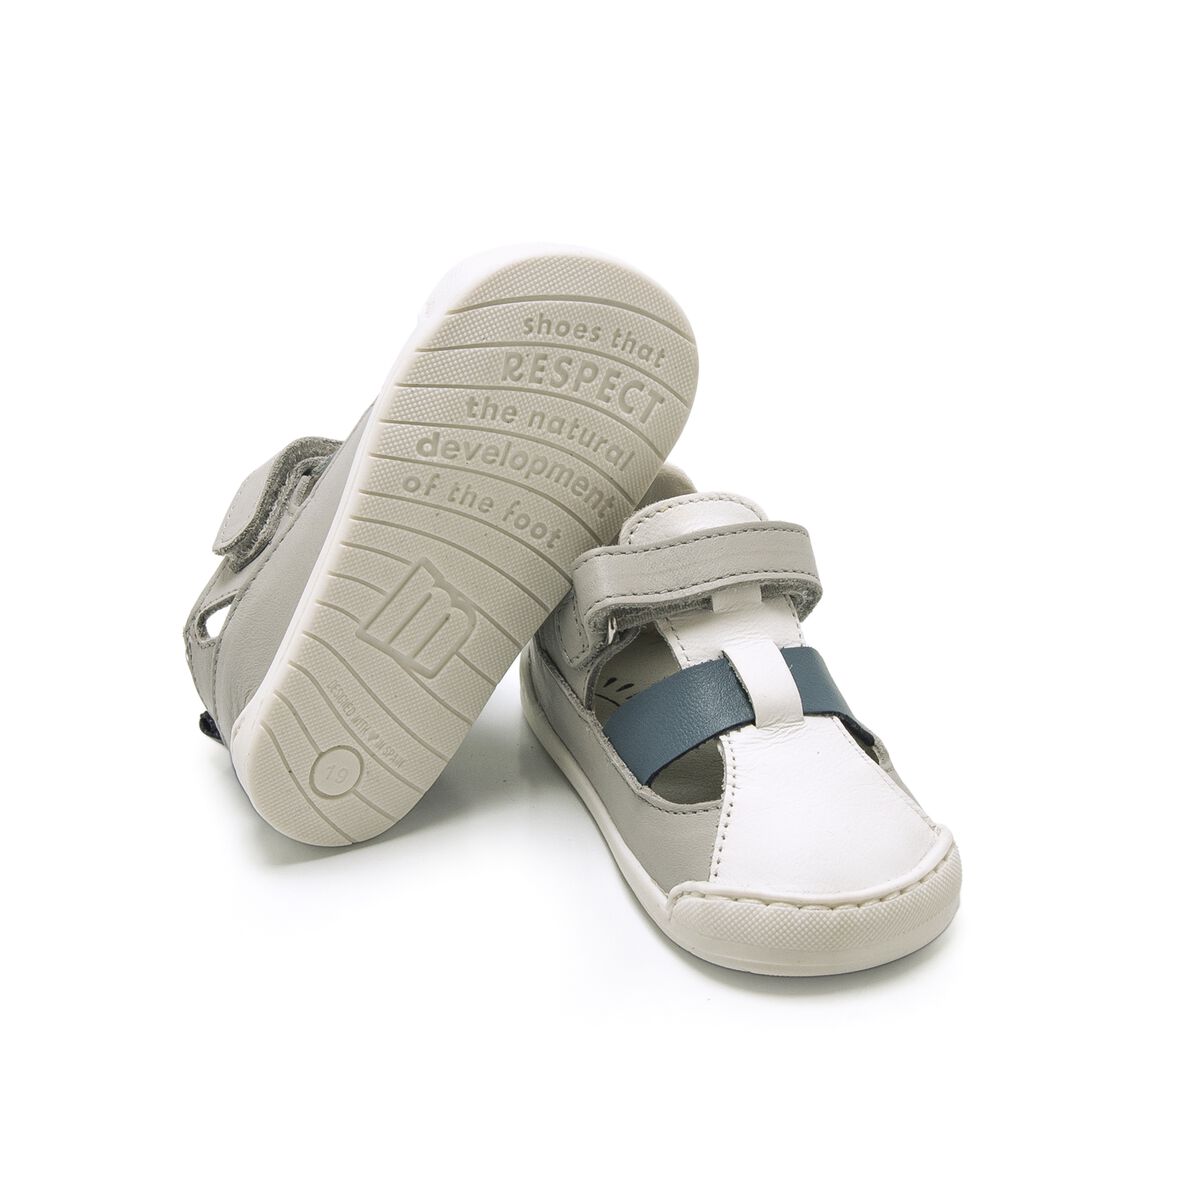 Sandalias de Nino modelo FREE BABY de MTNG image number 3